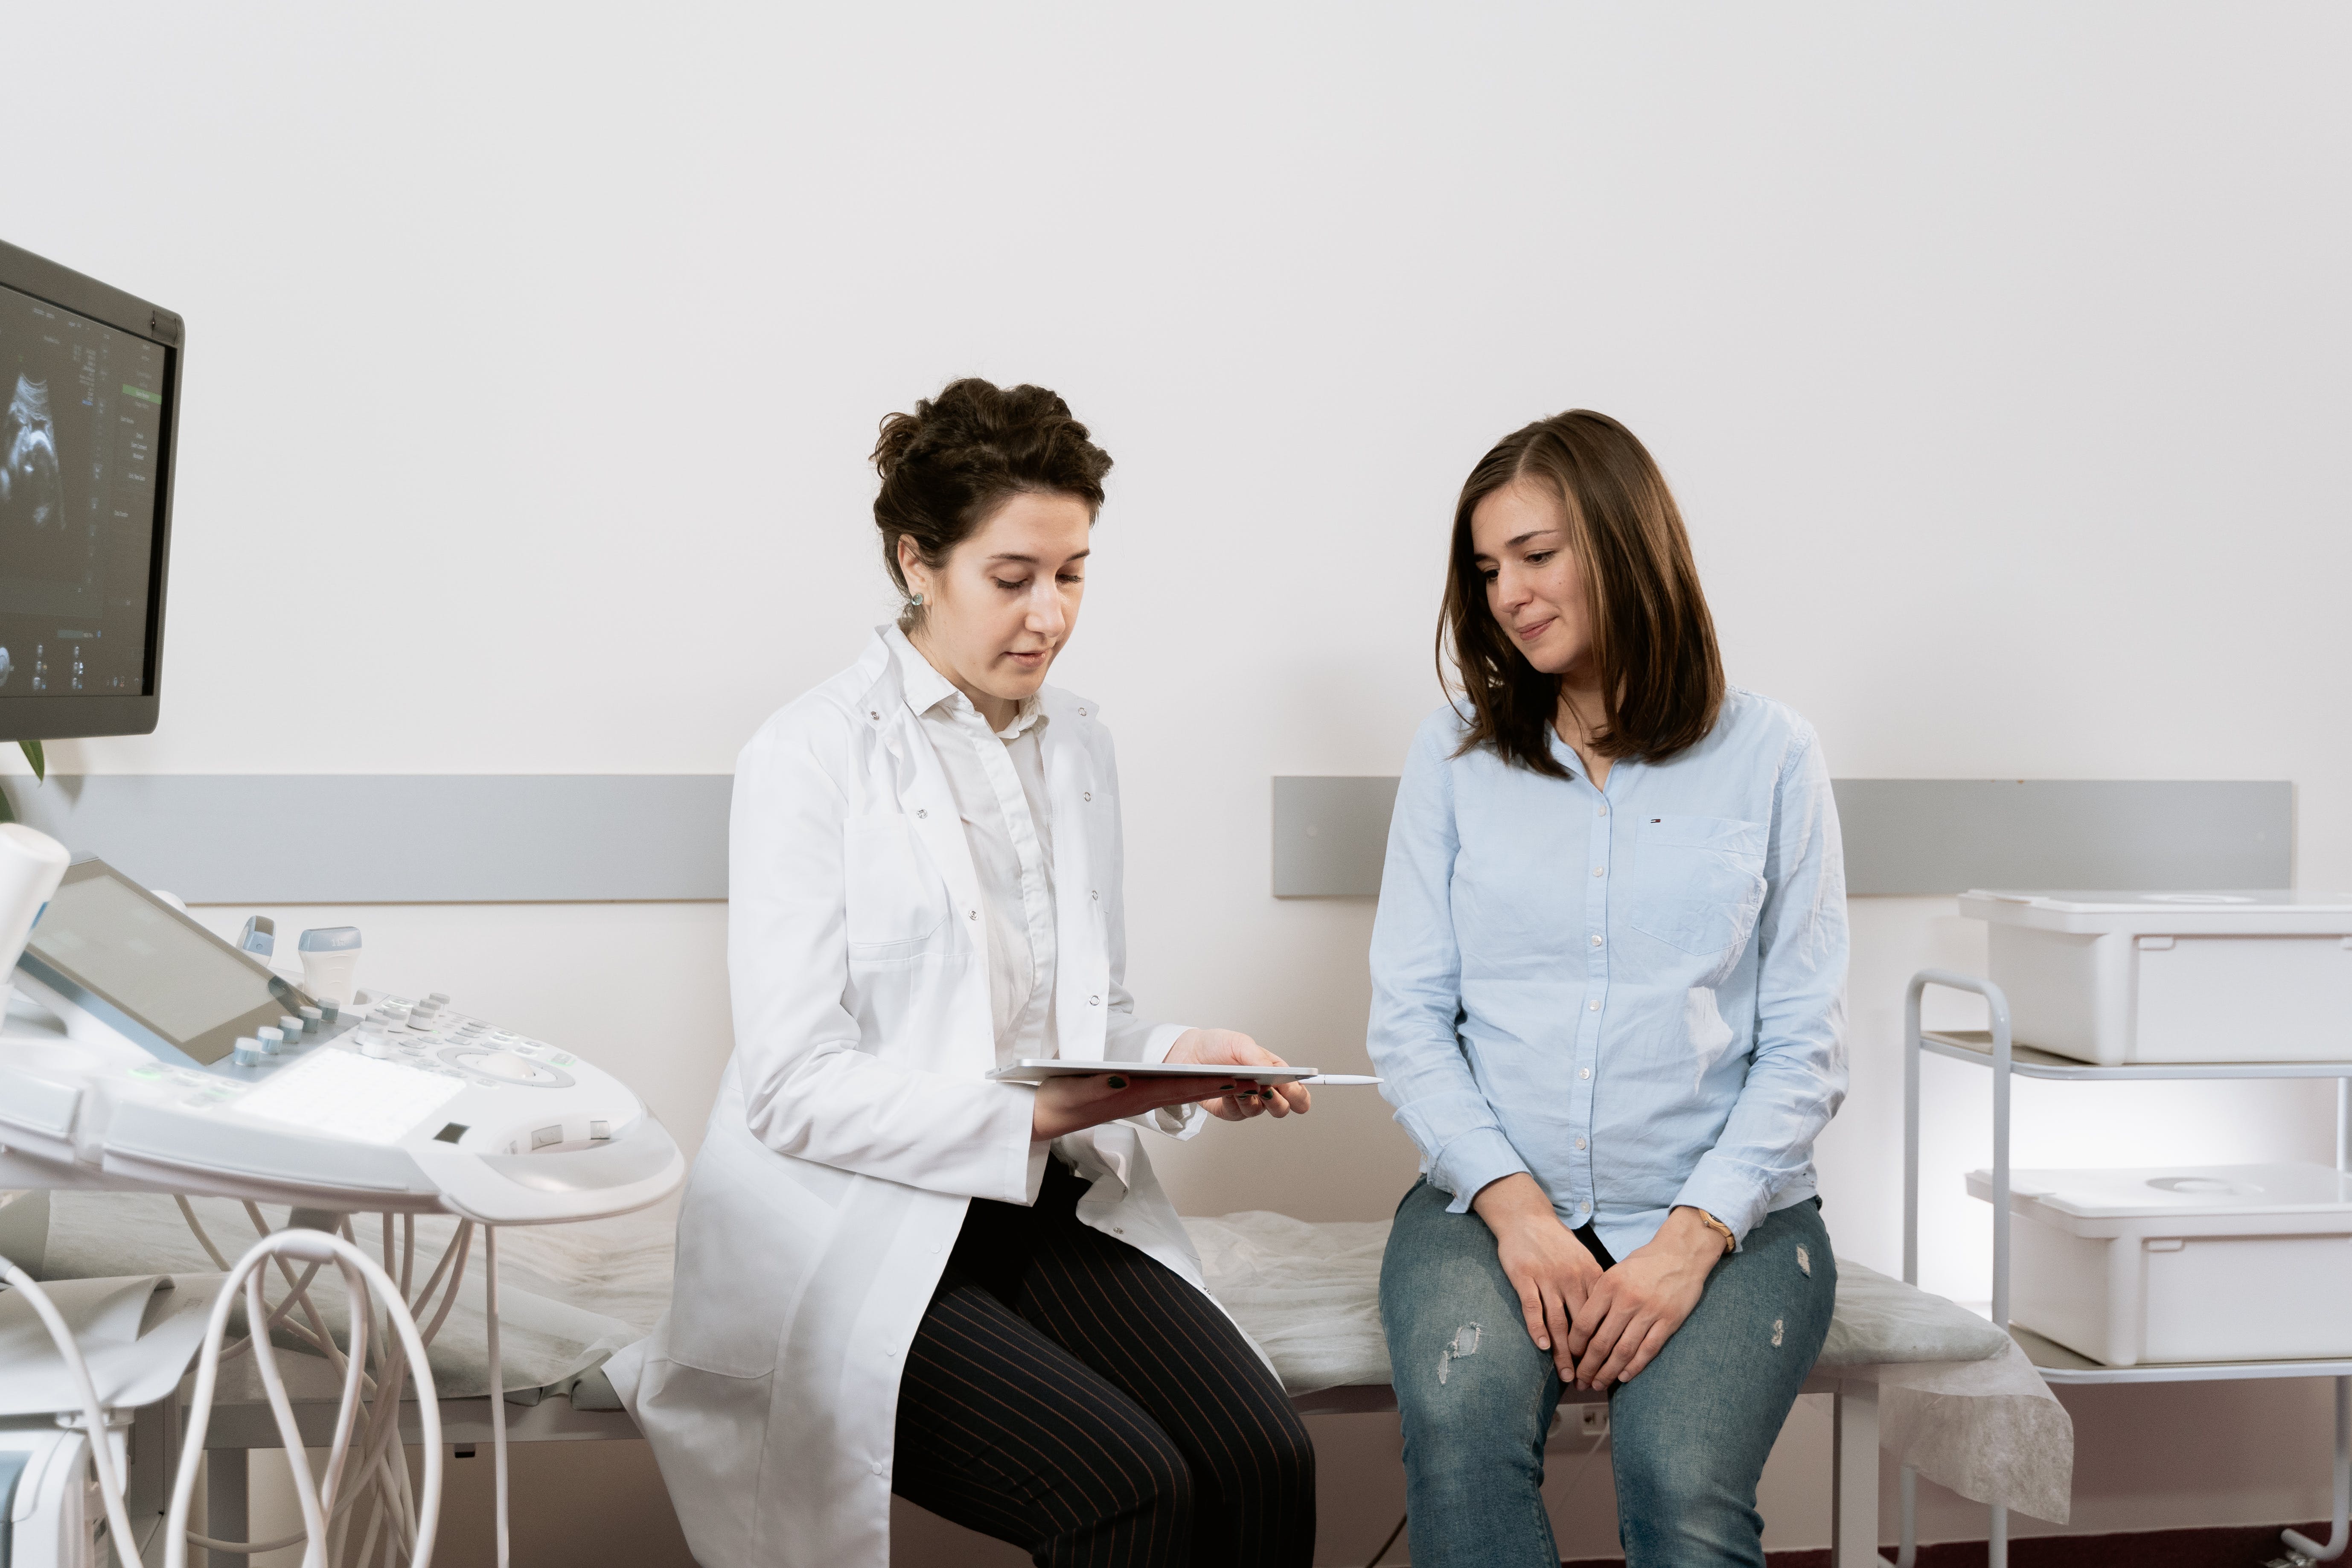 Eine schwangere Frau im Gespräch mit einem Arzt. | Quelle: Pexels